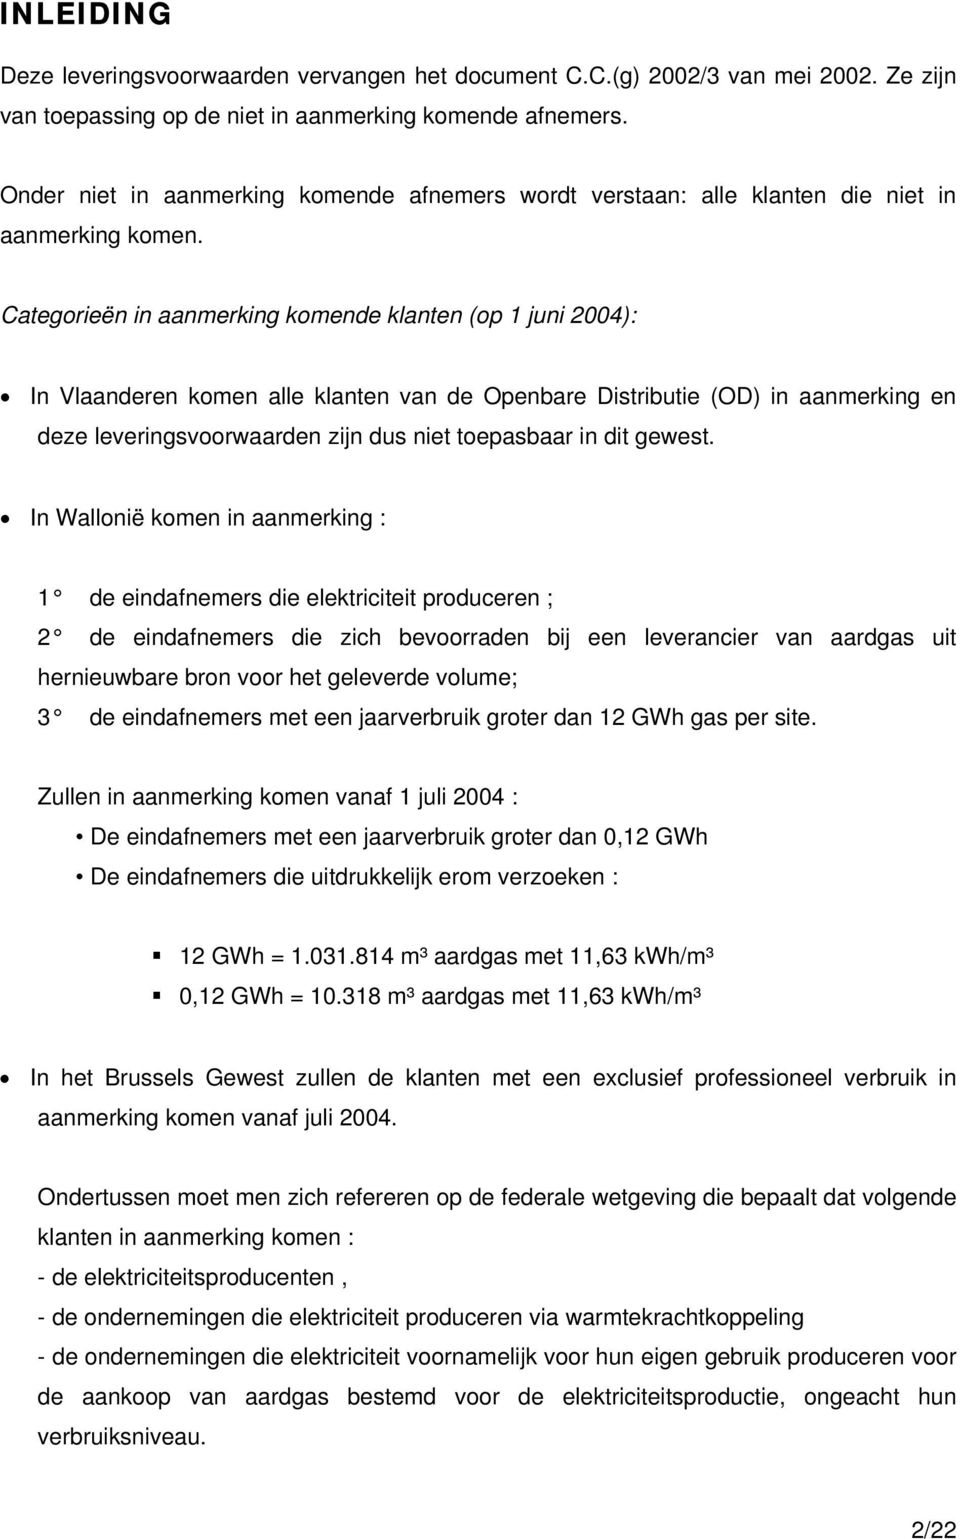 Categorieën in aanmerking komende klanten (op 1 juni 2004): In Vlaanderen komen alle klanten van de Openbare Distributie (OD) in aanmerking en deze leveringsvoorwaarden zijn dus niet toepasbaar in